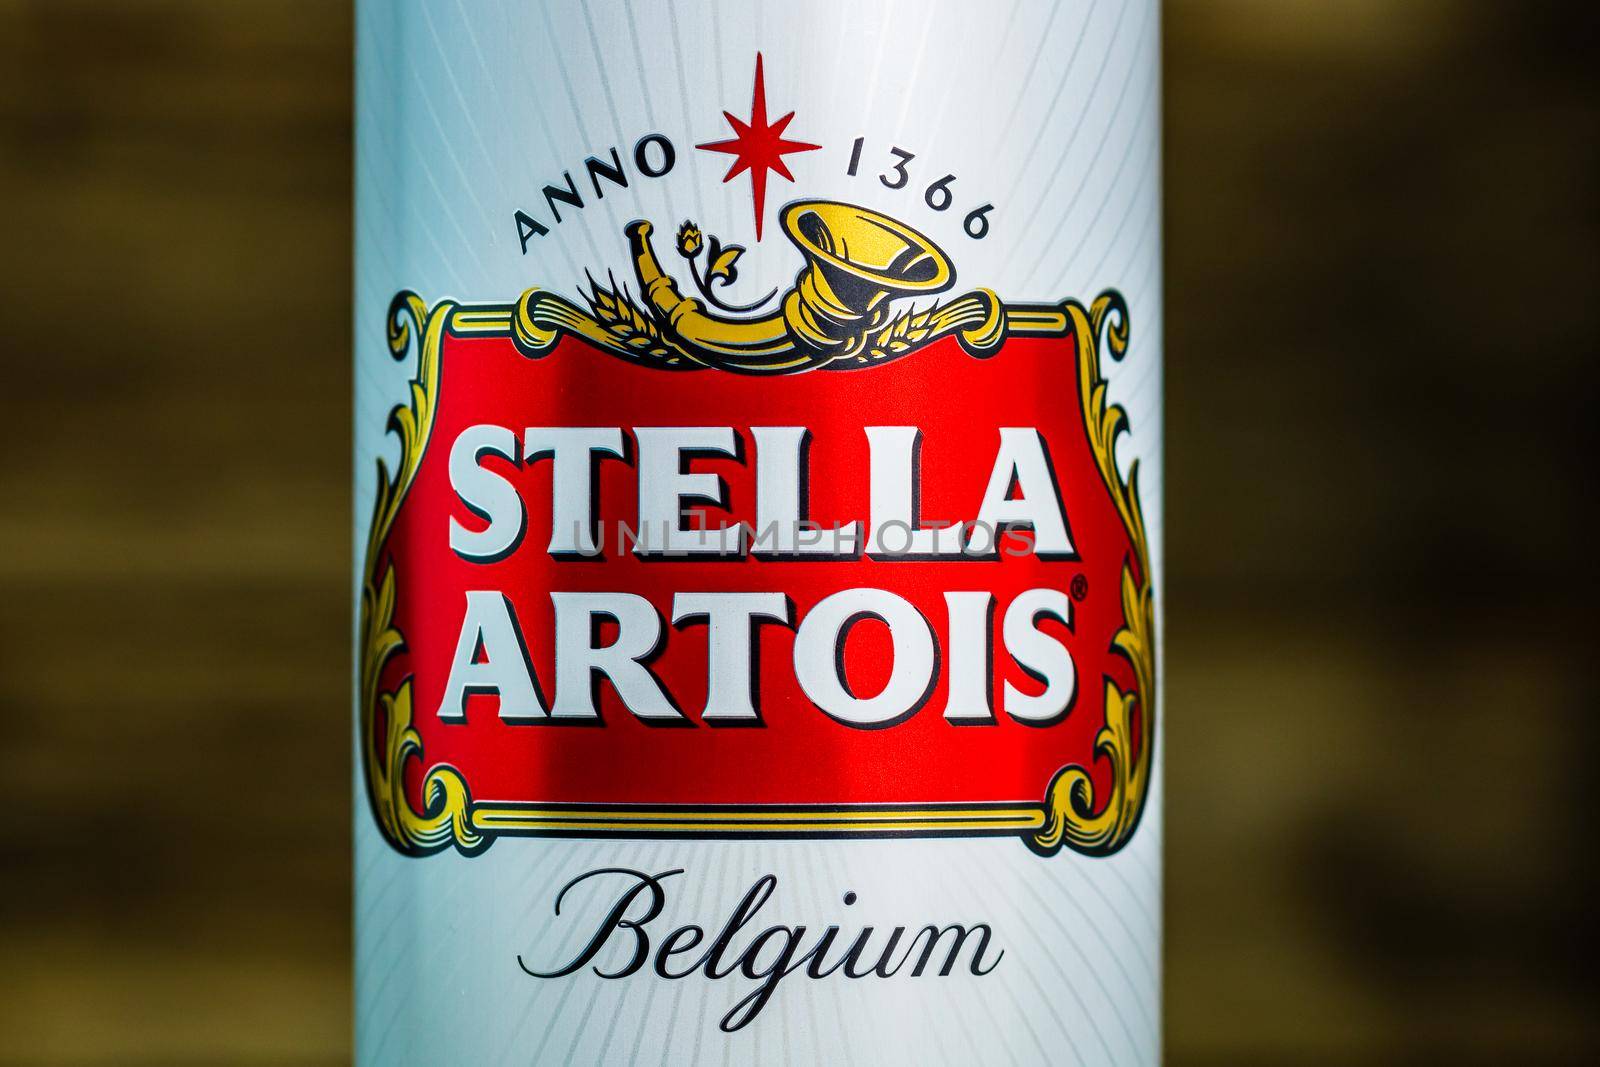 Great Belgium beer - Stella Artois. Belgium Premium Lager beer can. Studio photo shoot in Bucharest, Romania, 2020 by vladispas